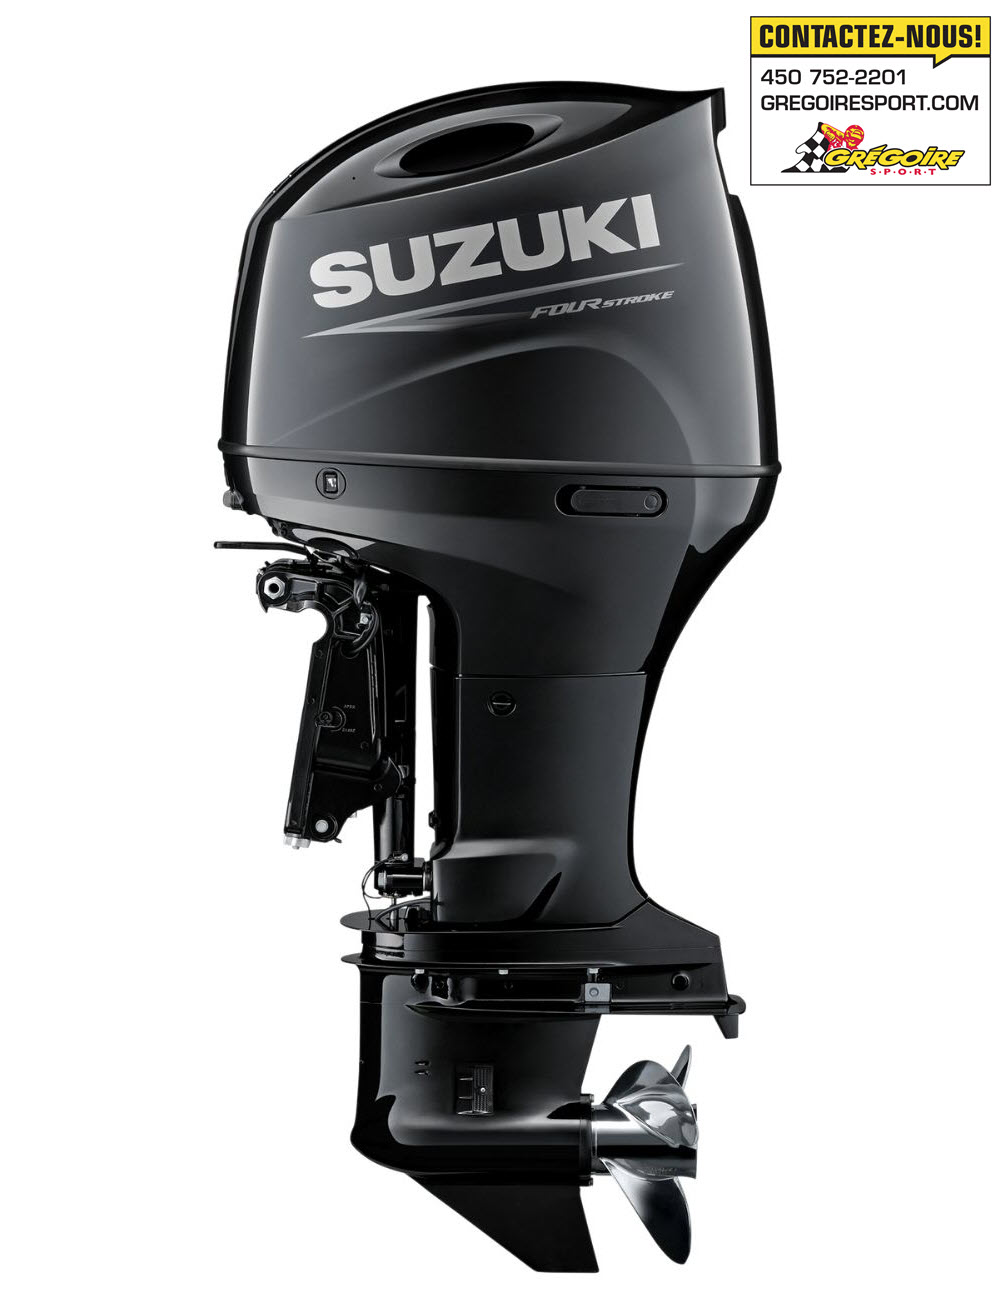 Suzuki Marine - Commande électronique pour moteur hors-bord